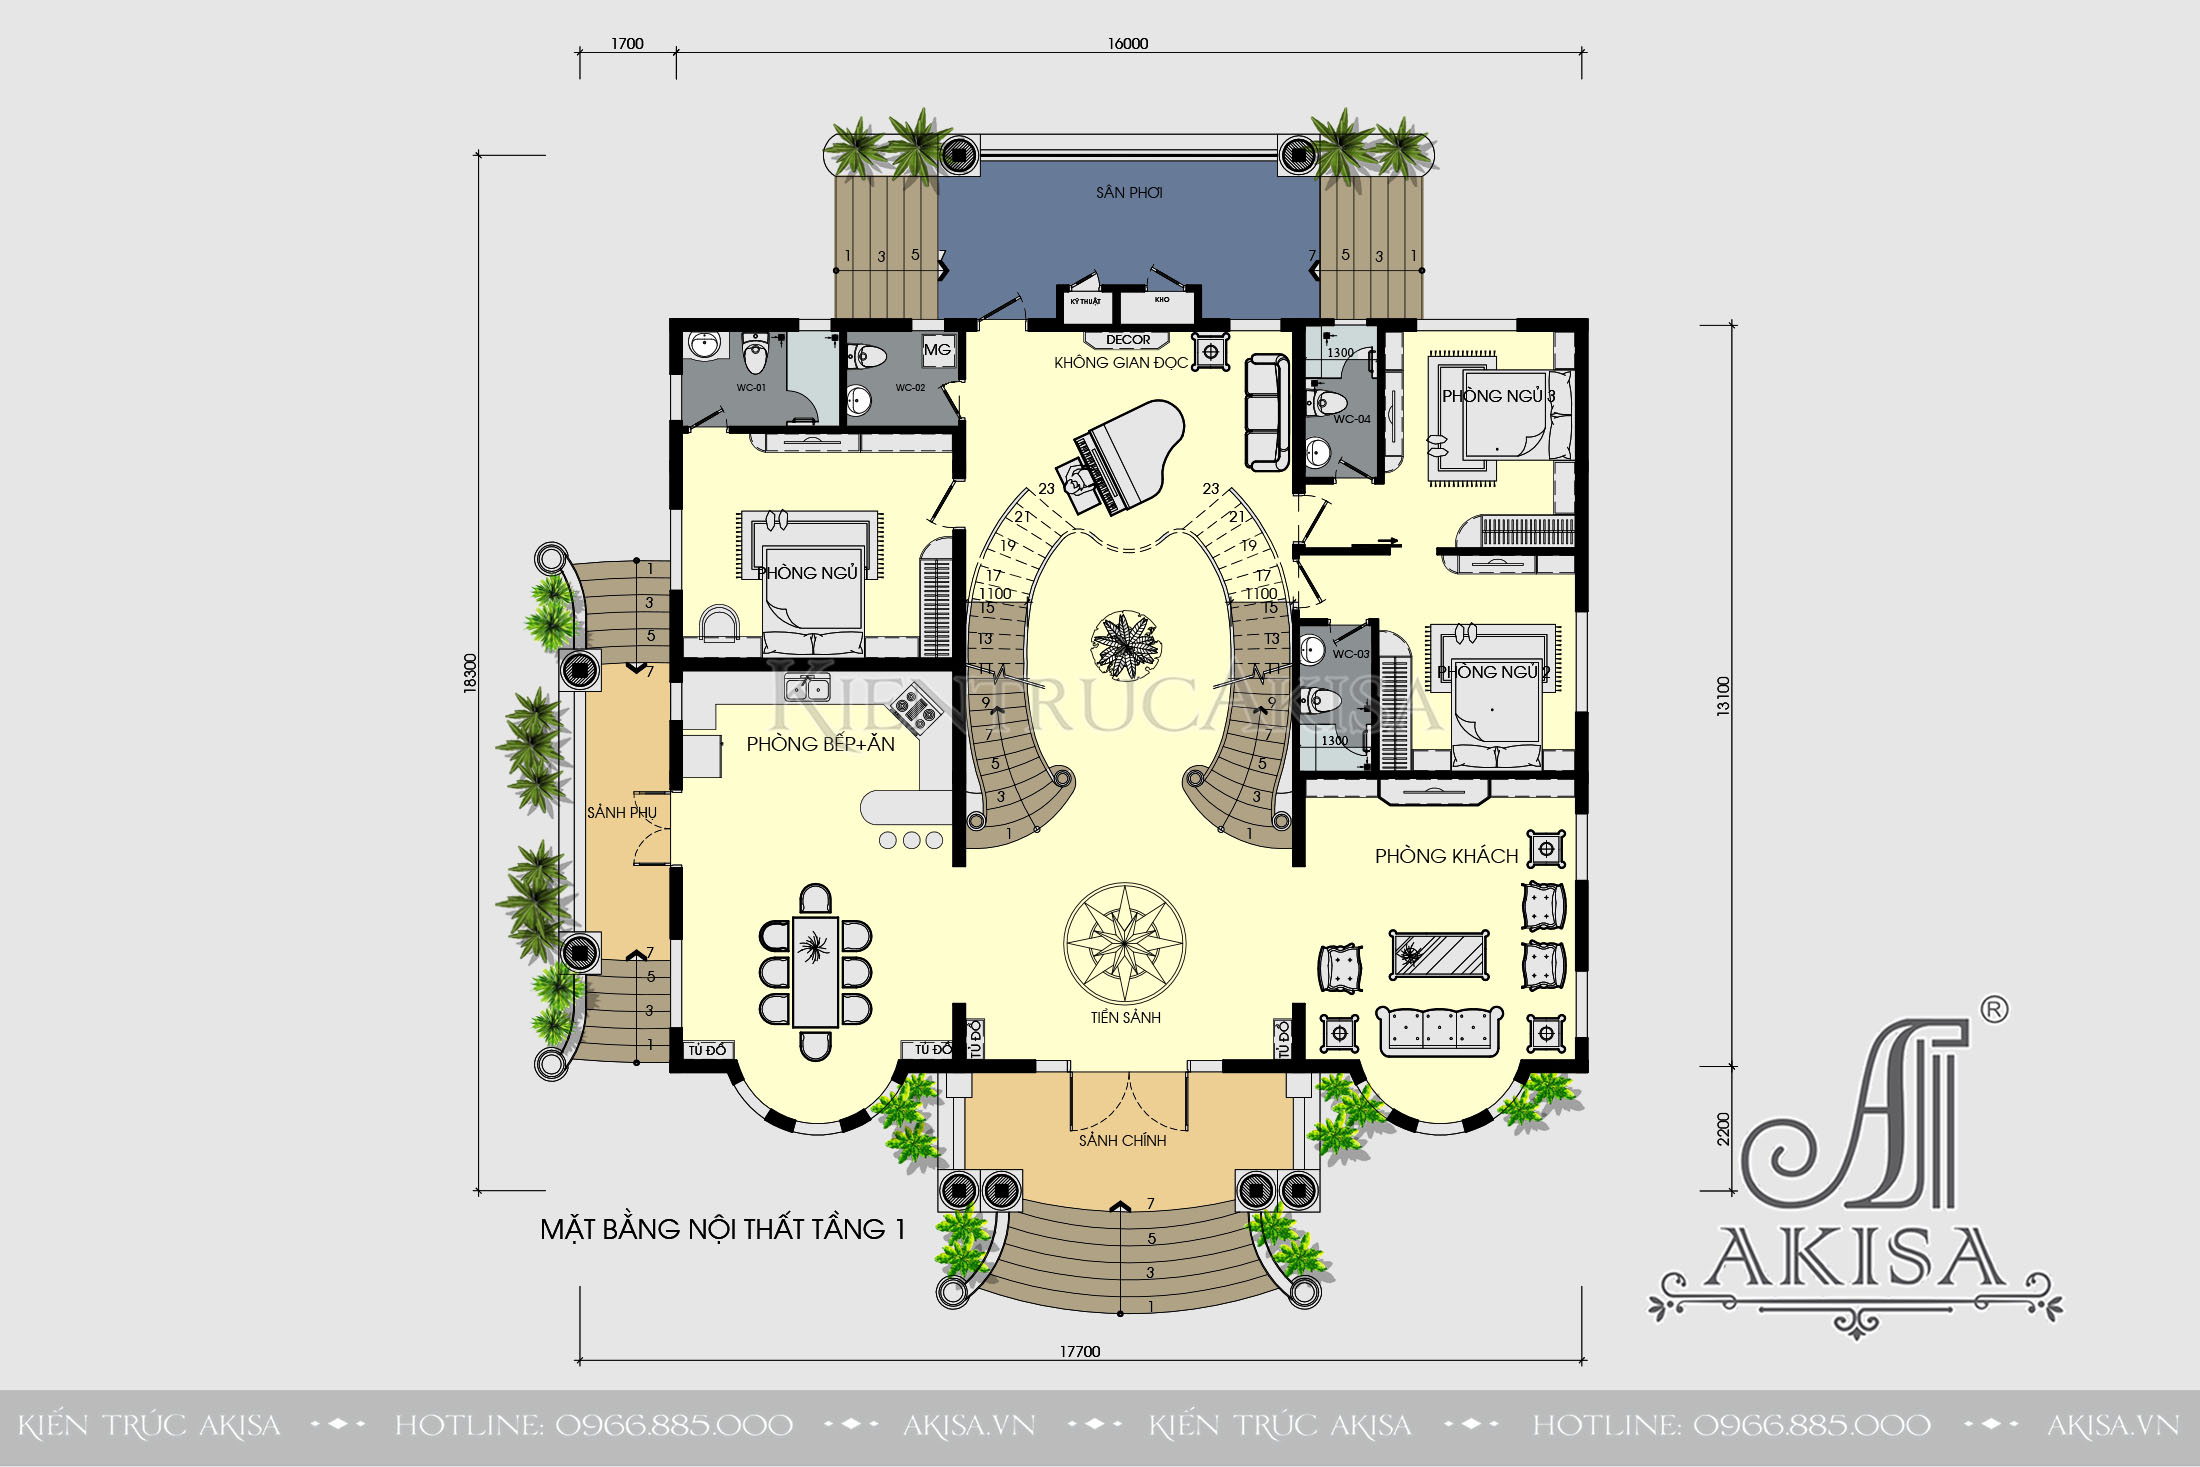 Share bản vẽ thiết kế biệt thự 2 tầng full  Siêu thị nhà mẫu  Mặt bằng  tầng nhà Biệt thự Thiết kế